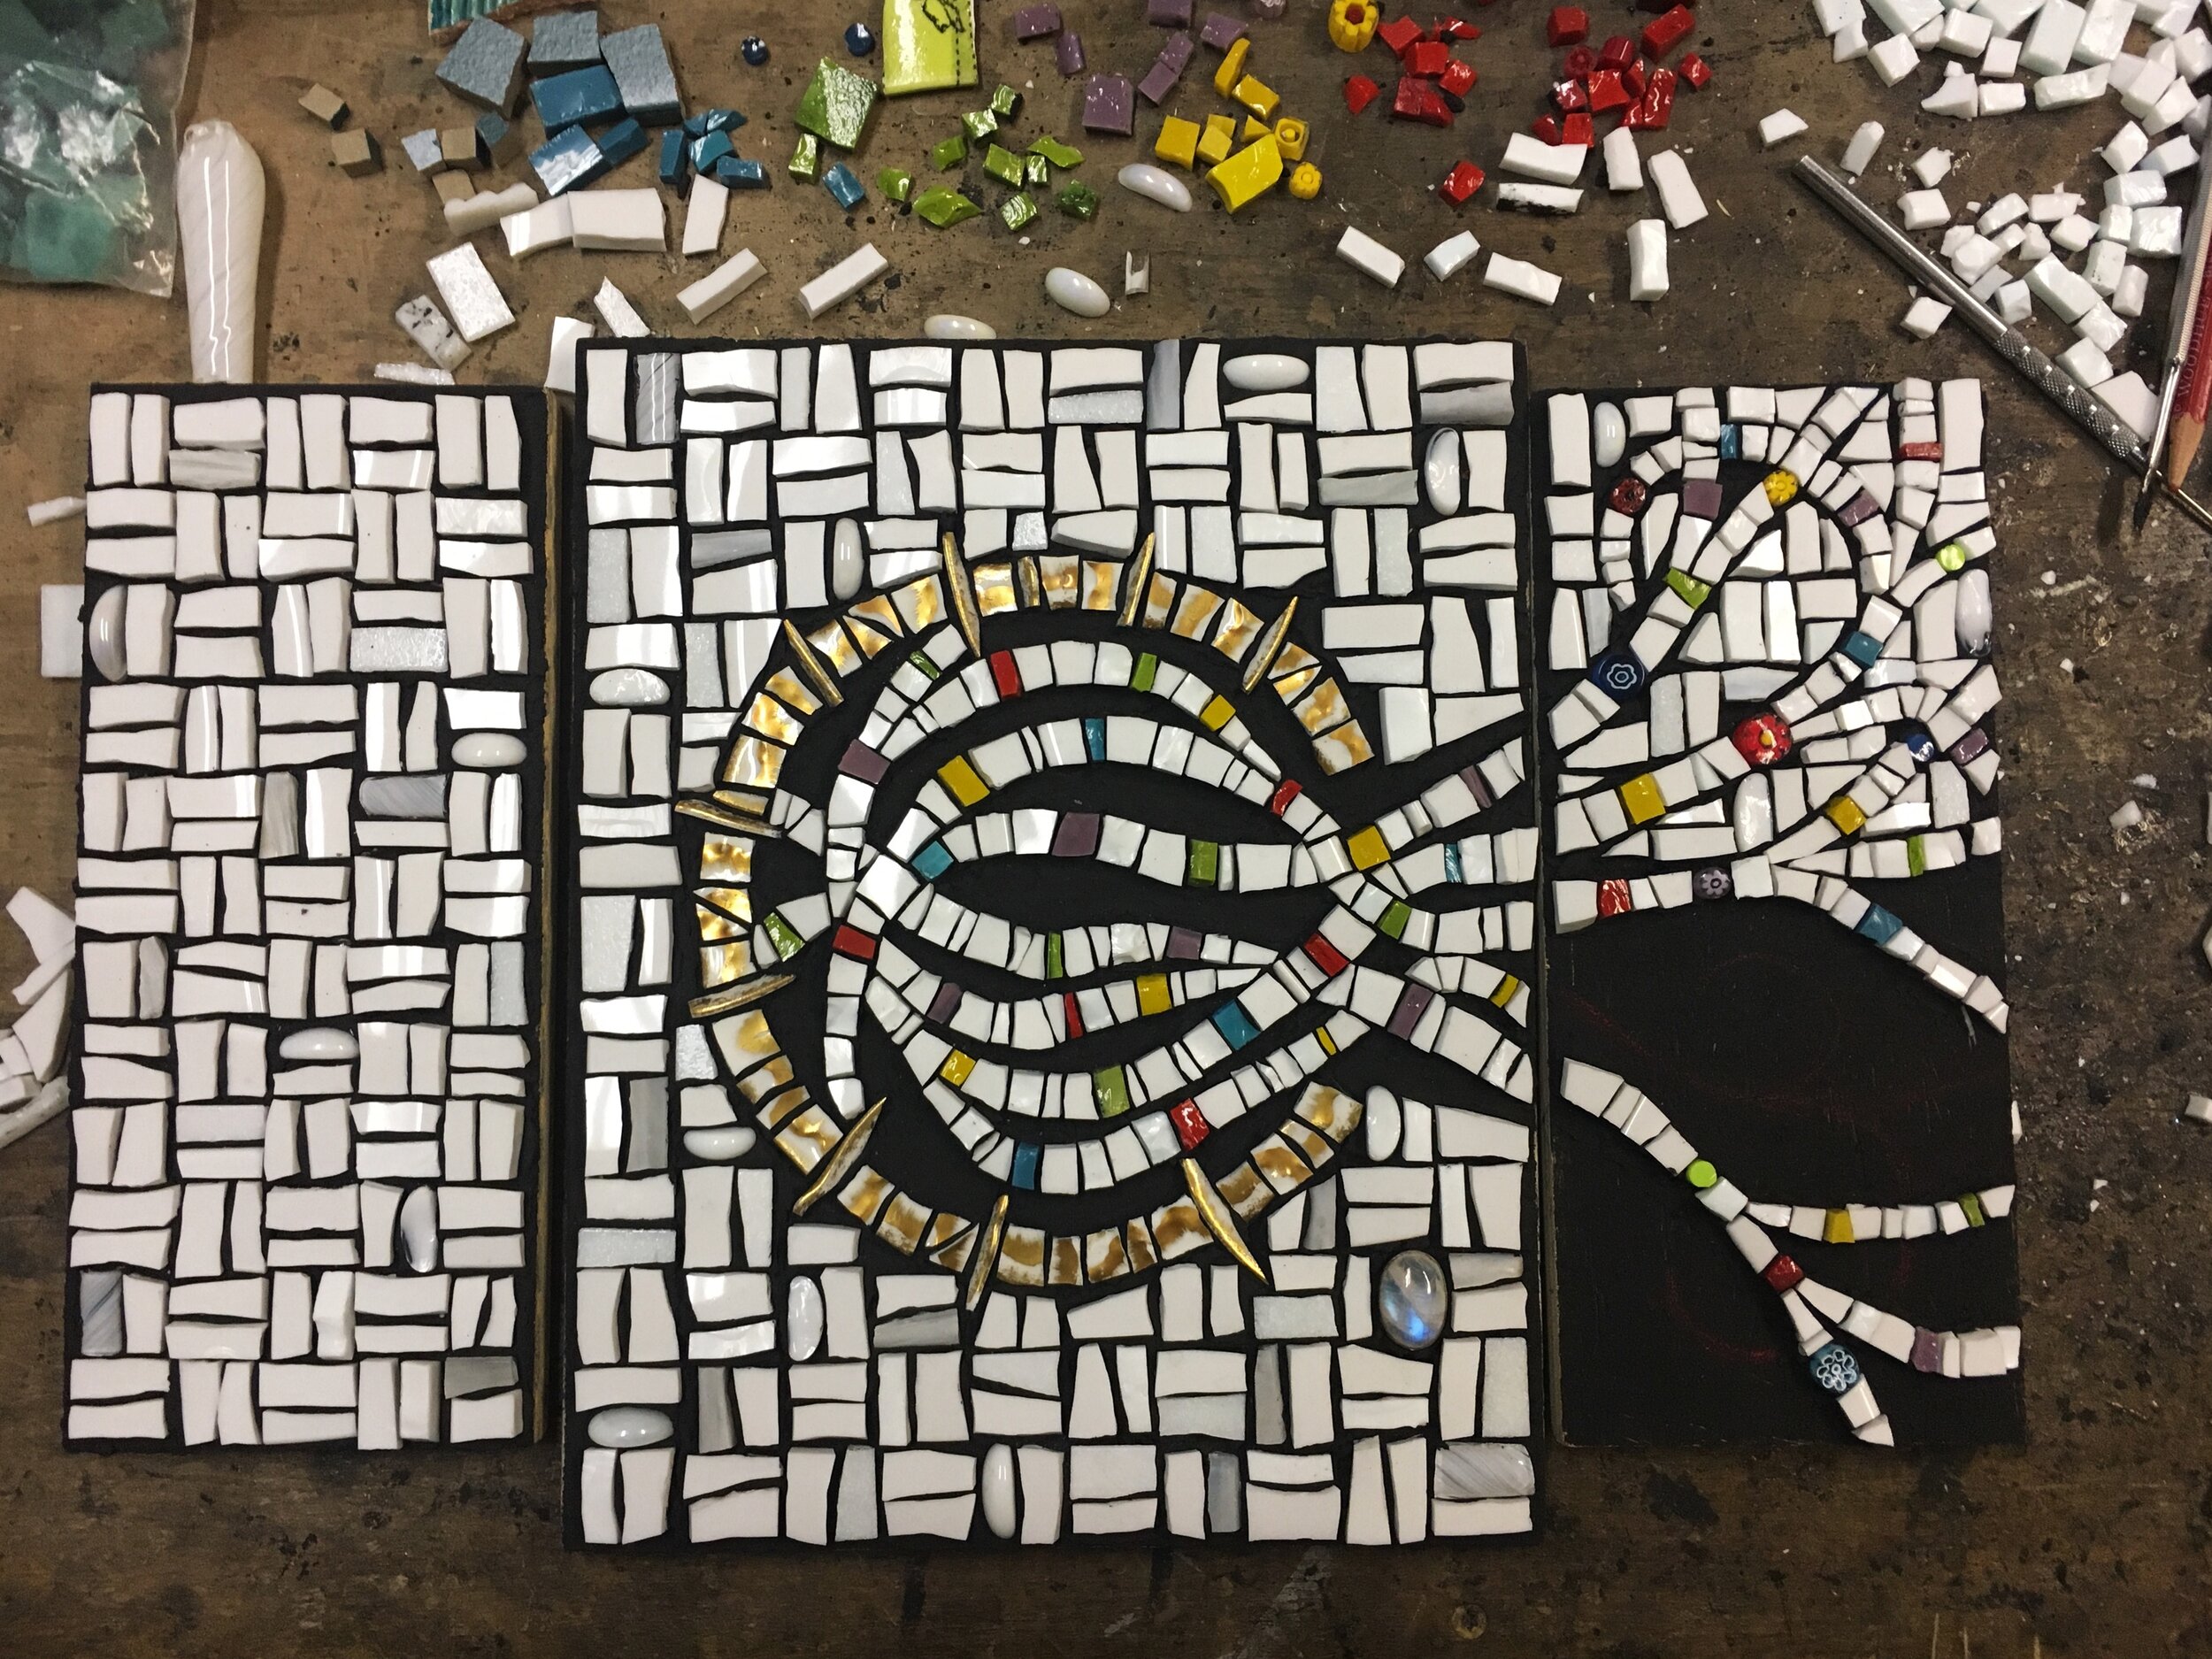 Mosaic art in progress 4